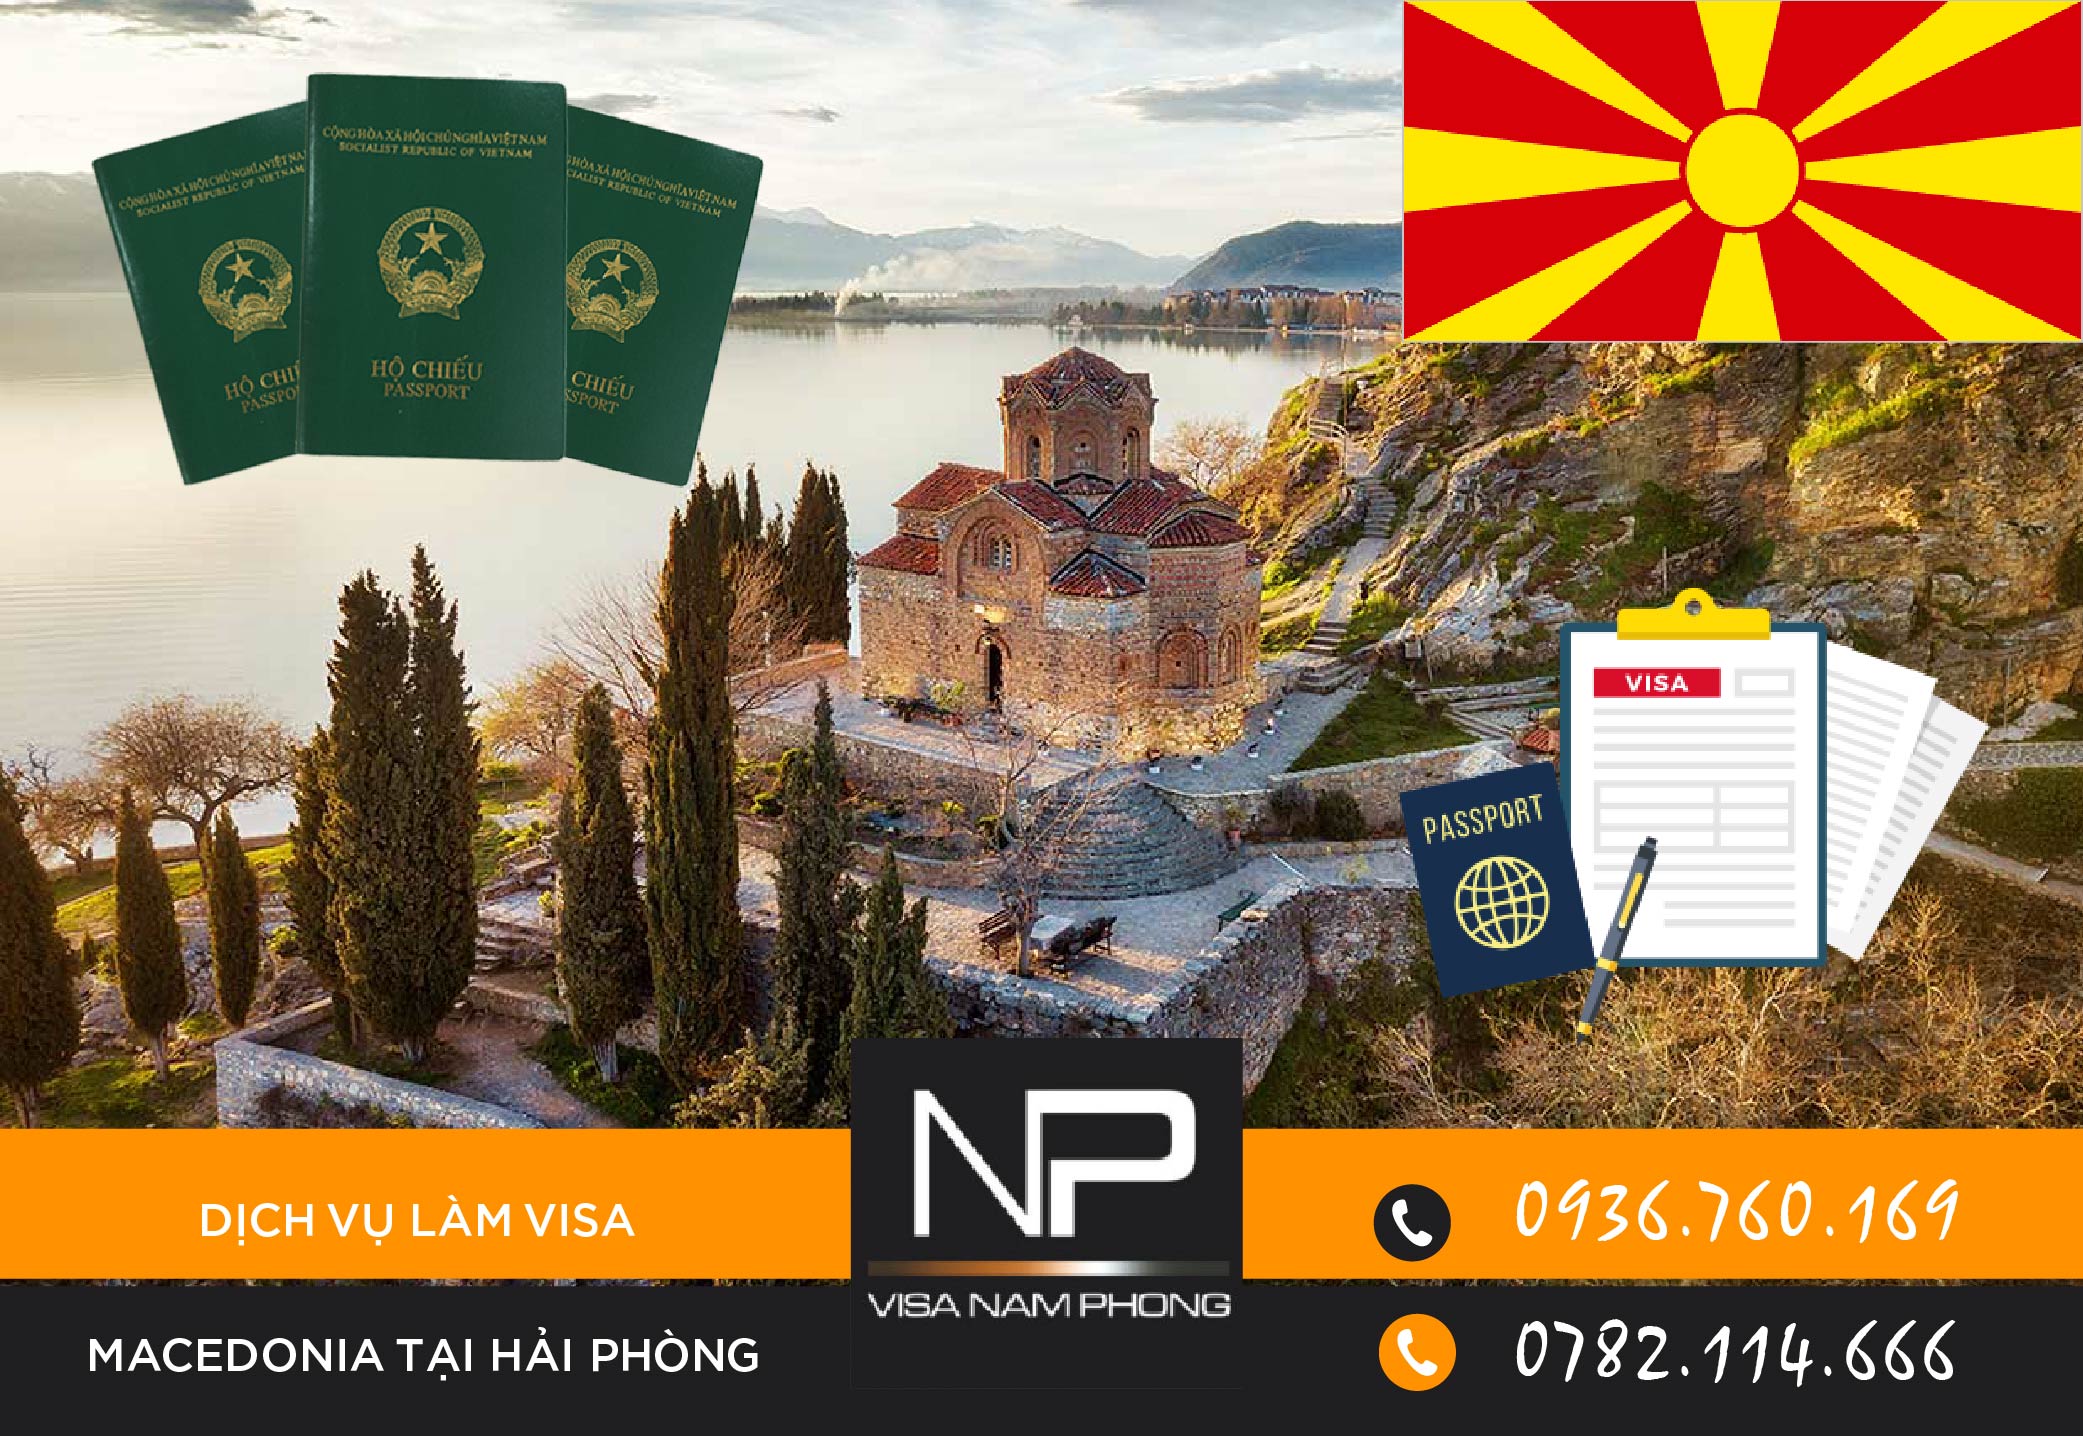 Dịch vụ làm visa Macedonia tại Hải Phòng